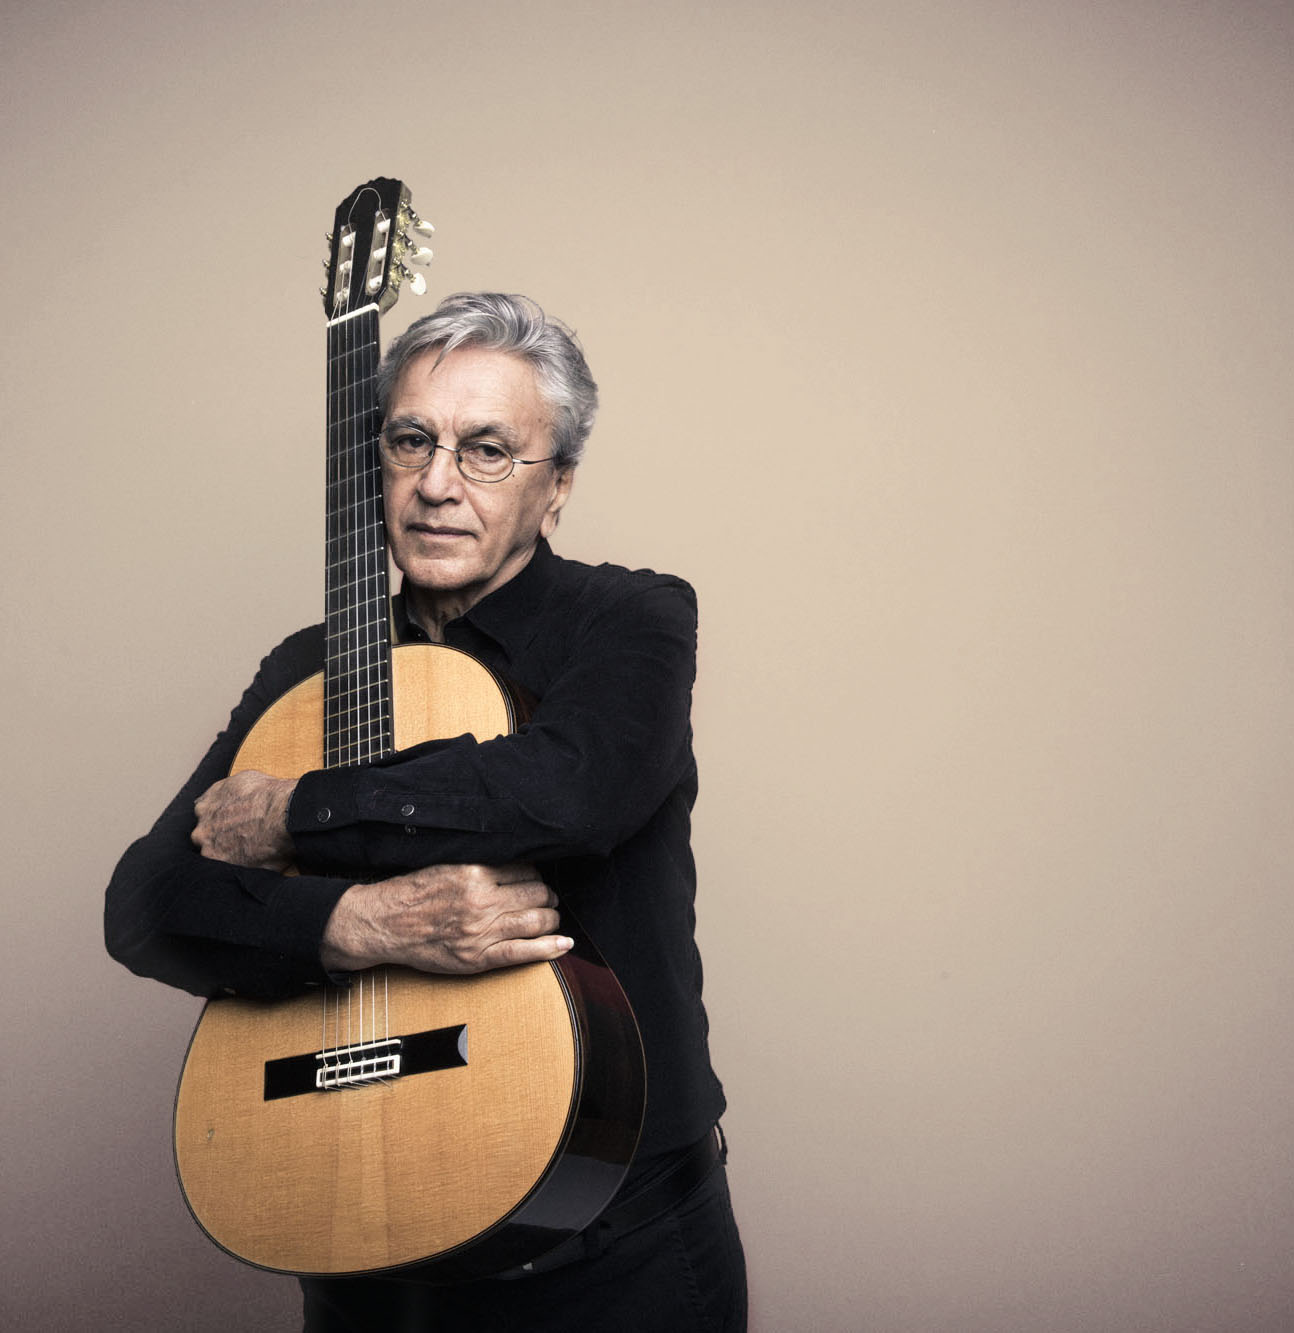 São disponibilizados mais bilhetes para concertos de Caetano Veloso no Coliseu do Porto